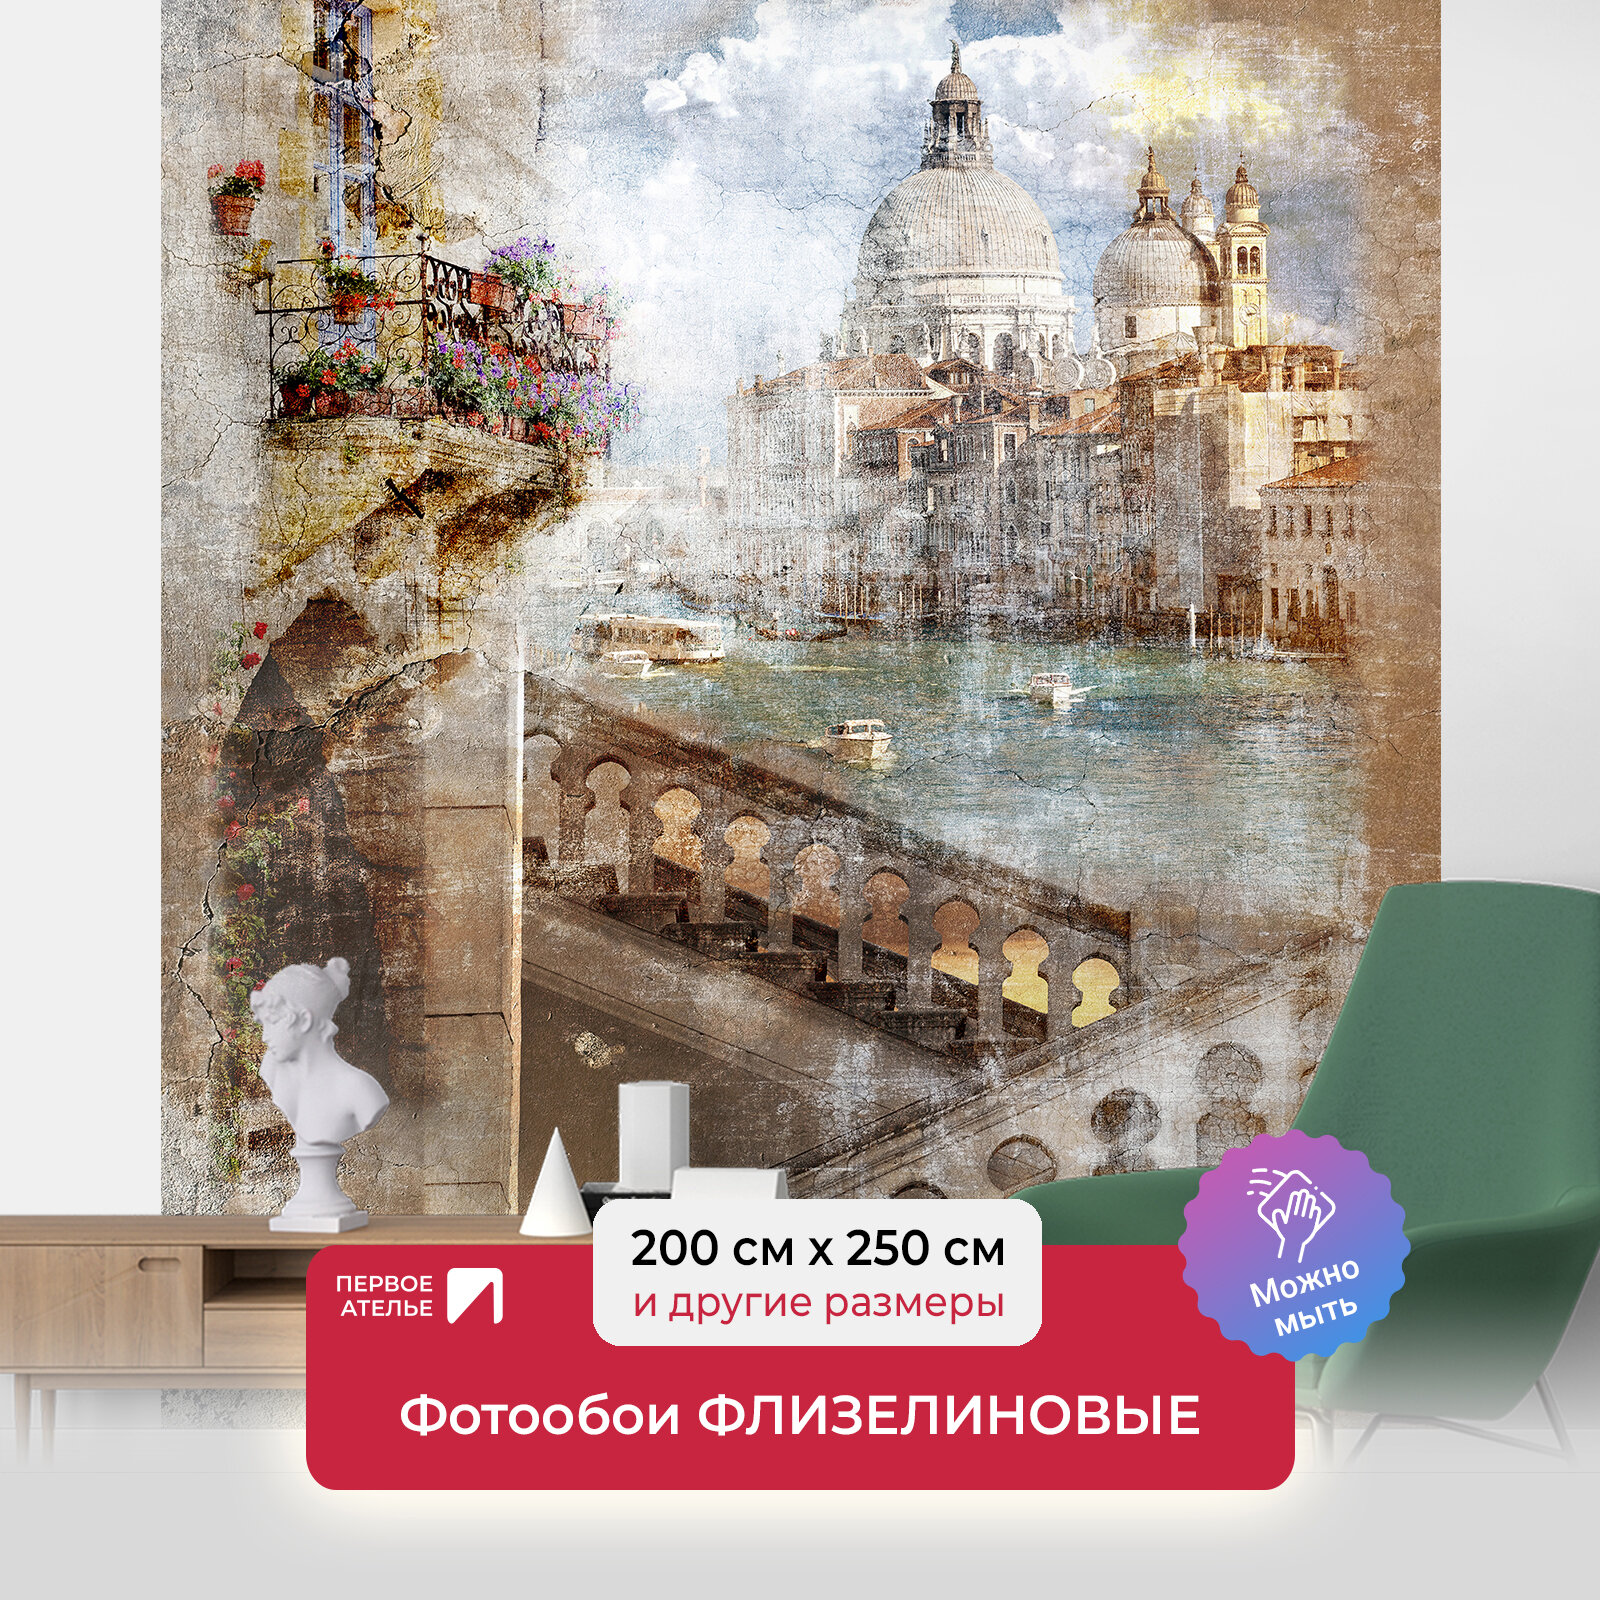 Фотообои на стену первое ателье "Состаренная фотография Венеции" 200х250 см (ШхВ), флизелиновые Premium